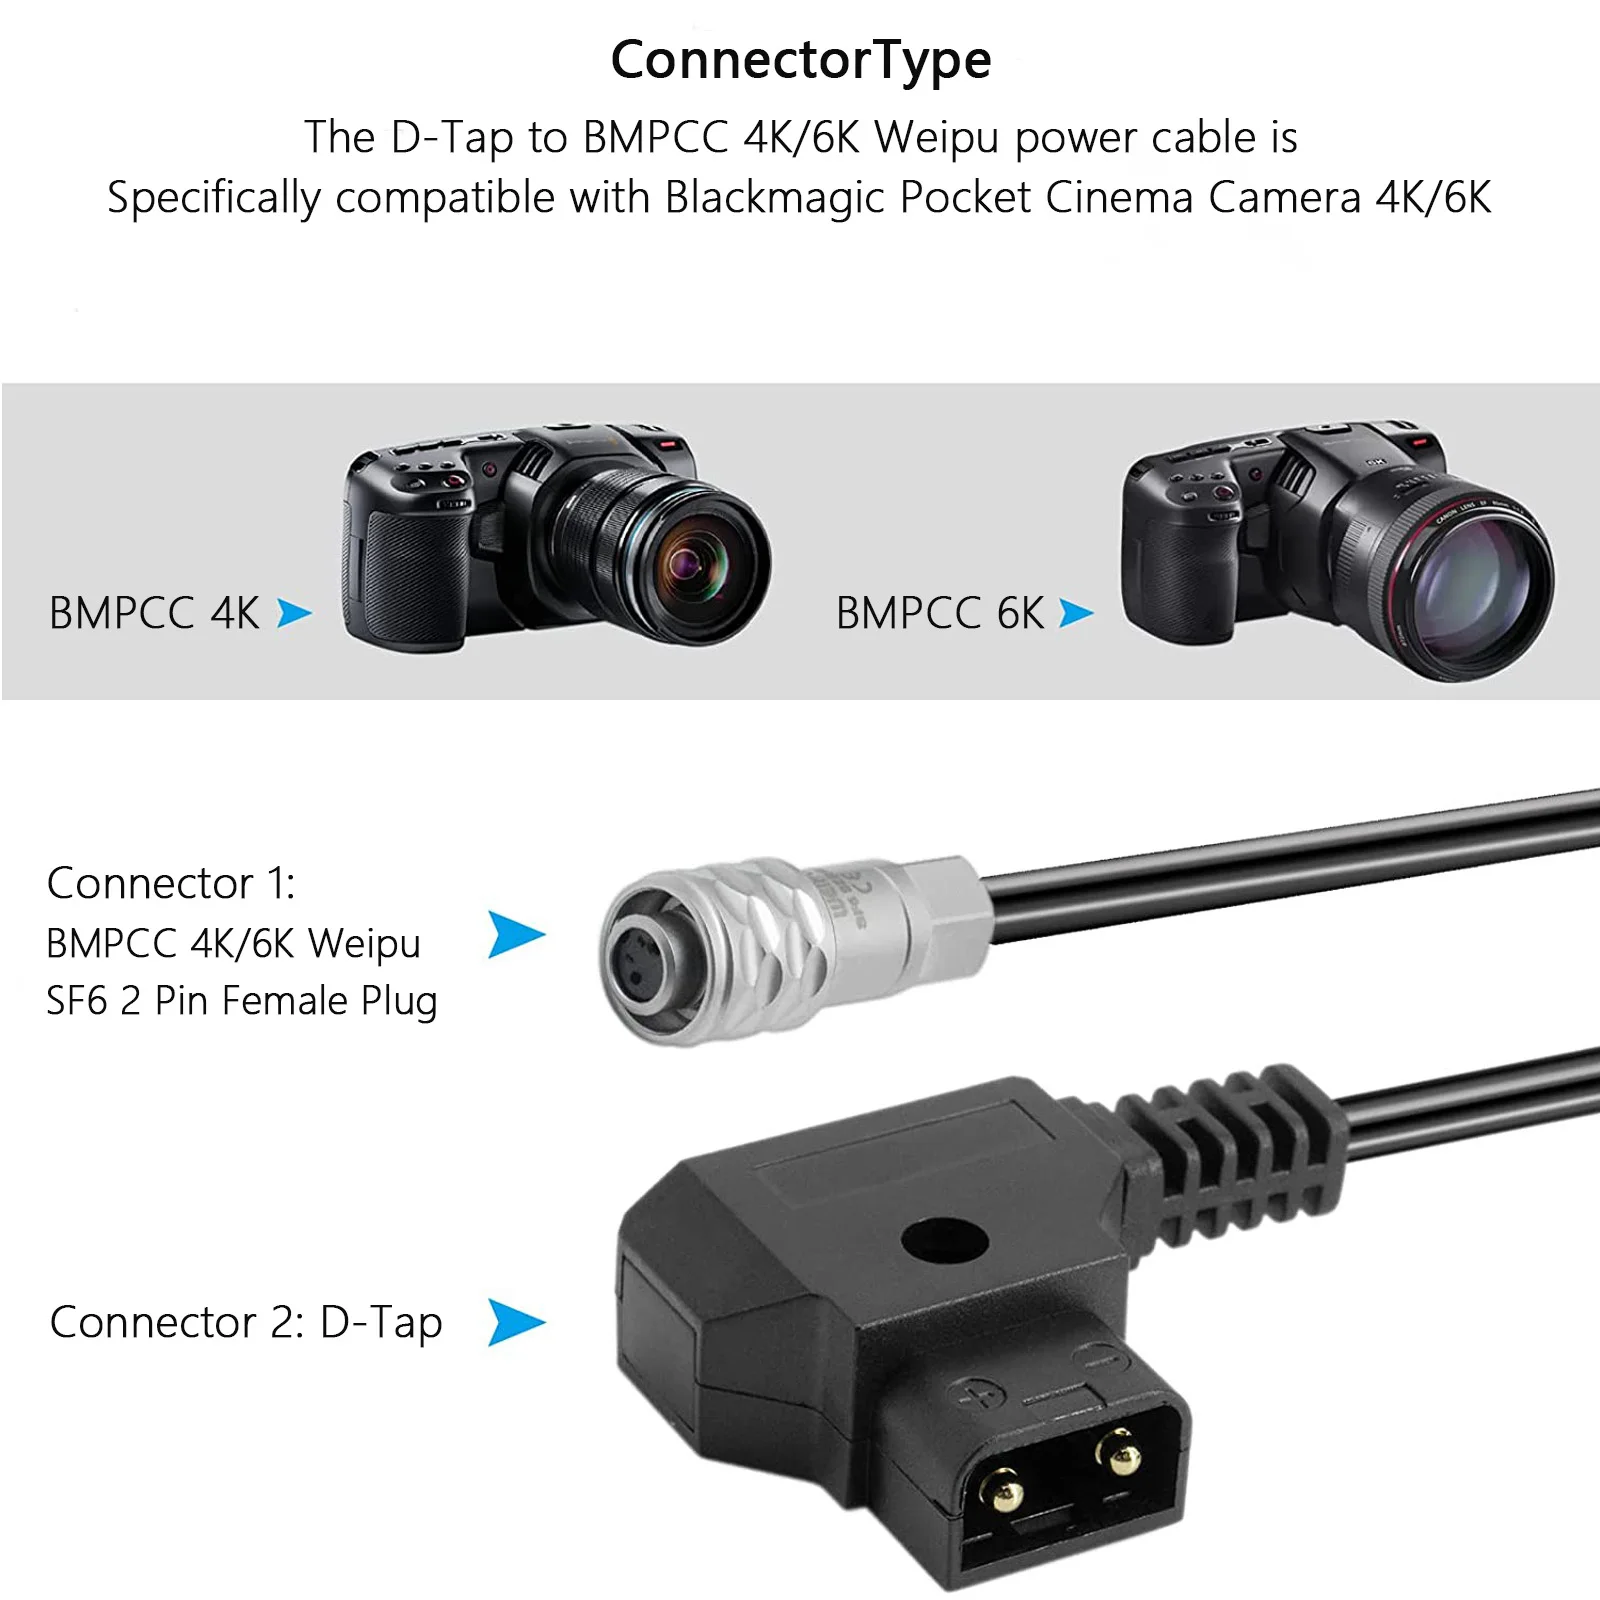 PD3.0 12V DC5525 Macho D-presiona a Para BMPCC 4K/6K Cable de Alimentación Cable en Espiral para la Blackmagic Pocket Cinema Camera 4K/6K Imagen 5